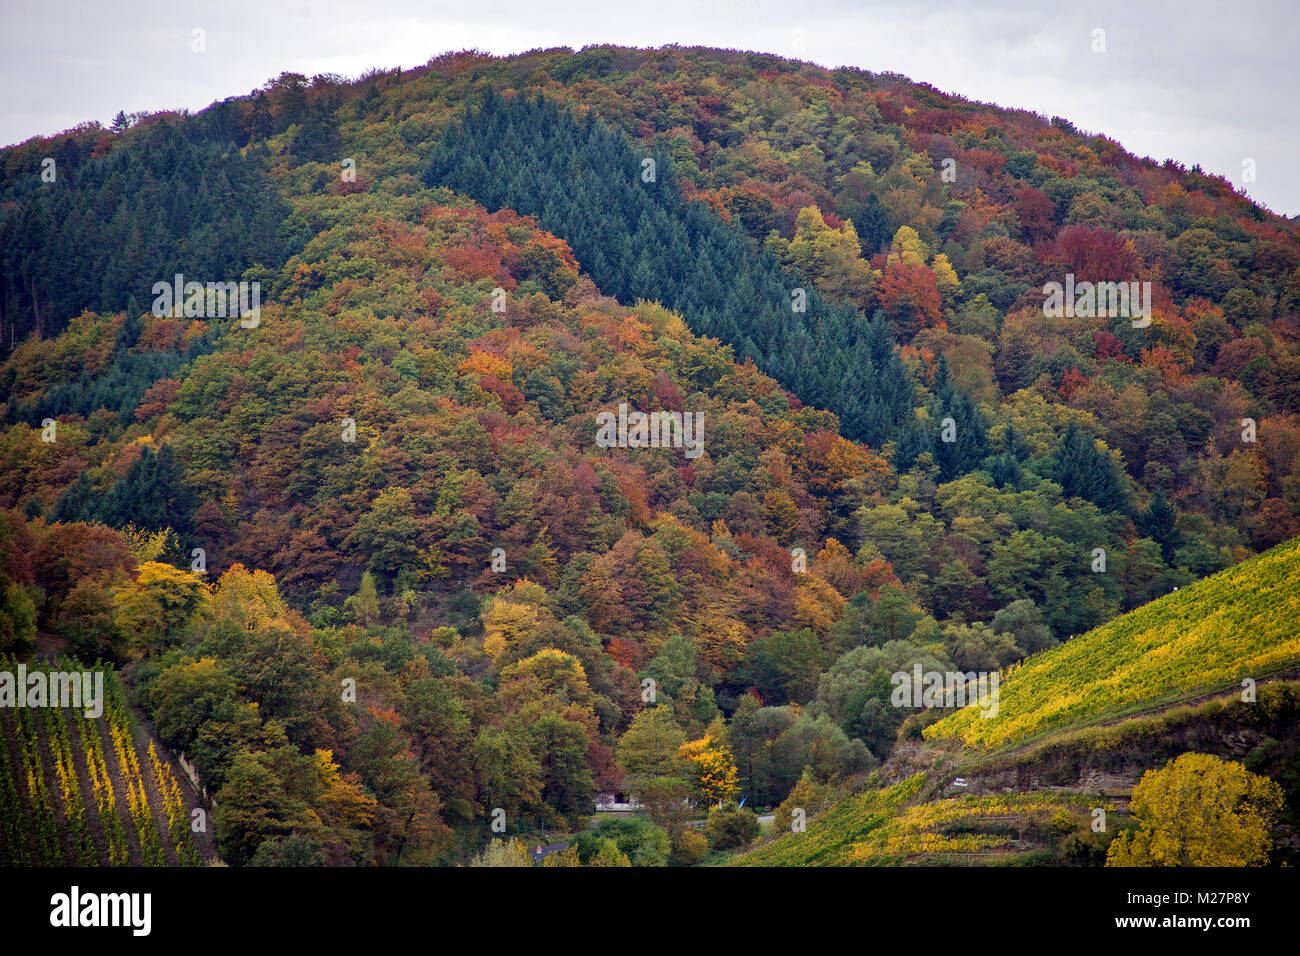 Couleurs d'automne, forêt mixte à l'automne, Neumagen-Dhron, Moselle, Rhénanie-Palatinat, Allemagne, Europe Banque D'Images